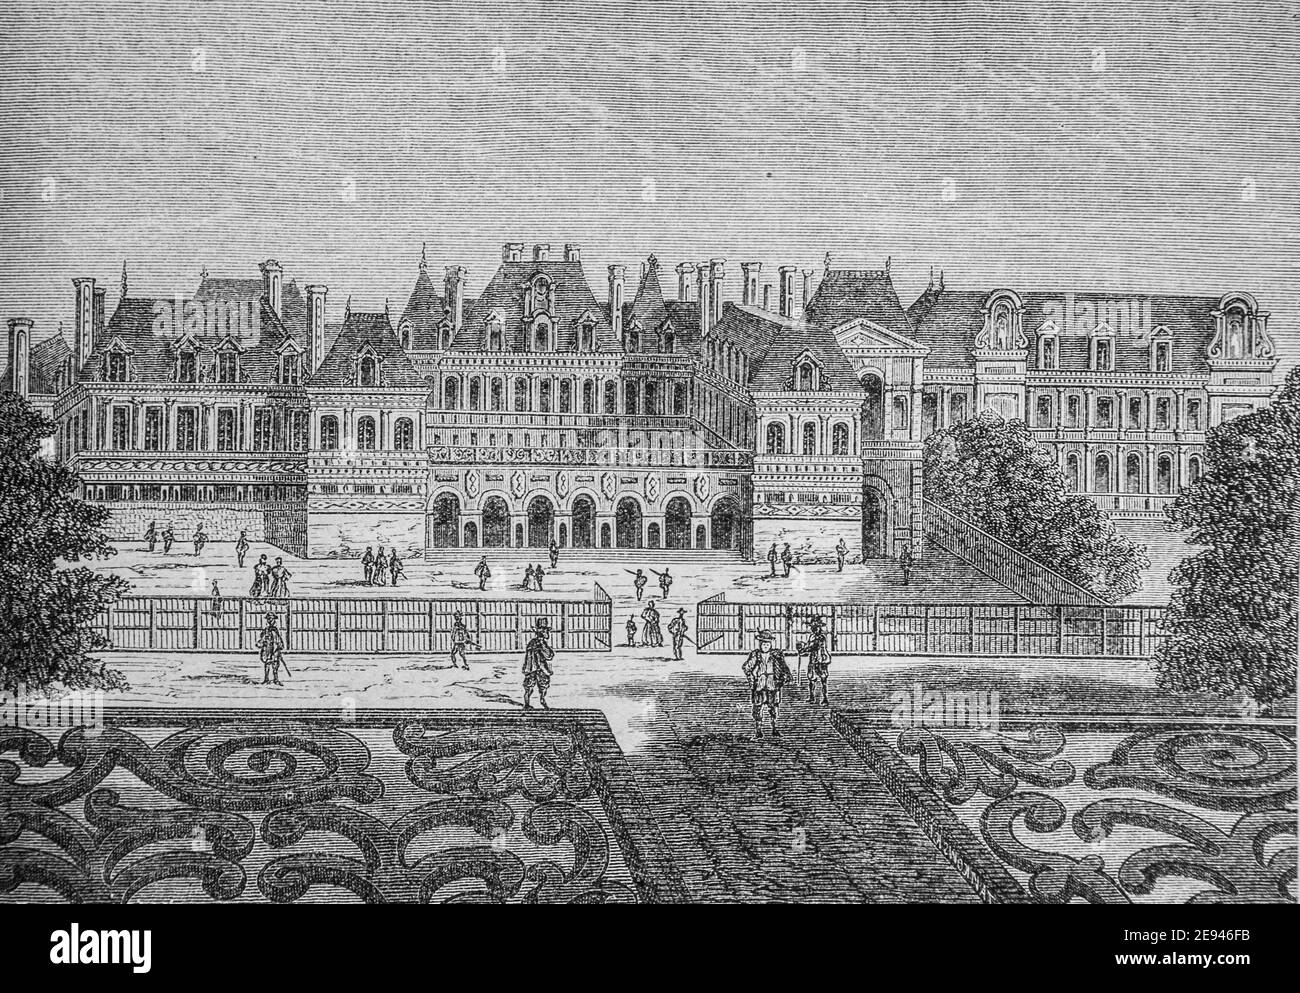 l'ancien palais cardinal ,aujourd'hui palais-royal1500-1600, histoire populaire de frrance par henri martin,editeur furne 1860 Stock Photo